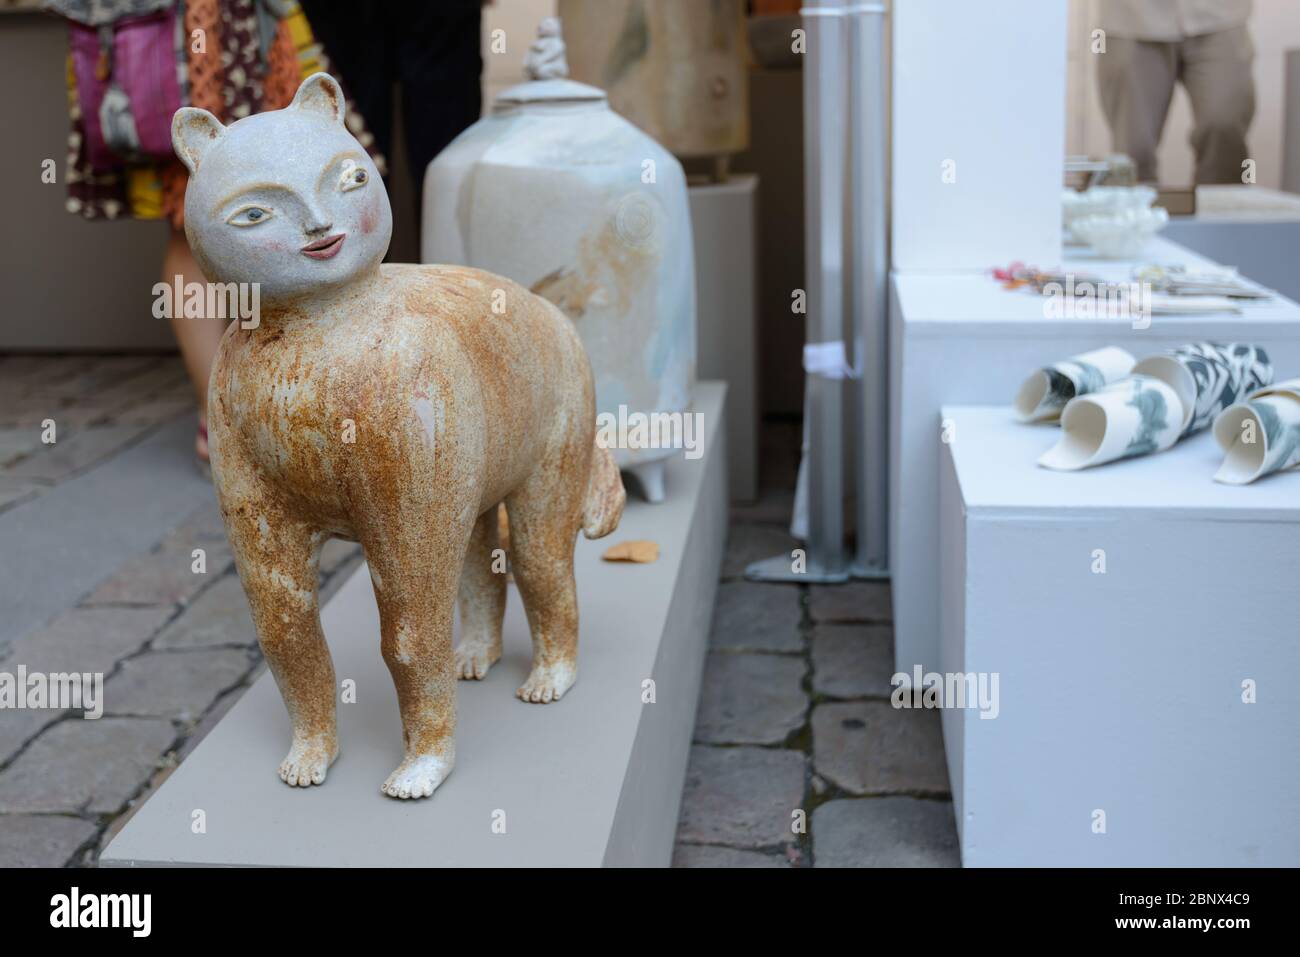 Lyon, France : une figurine de chat en céramique à visage humain sur le marché des arts de la place Saint-Jean par la cathédrale de Lyon (Cathédrale Saint-Jean-Baptiste). Banque D'Images